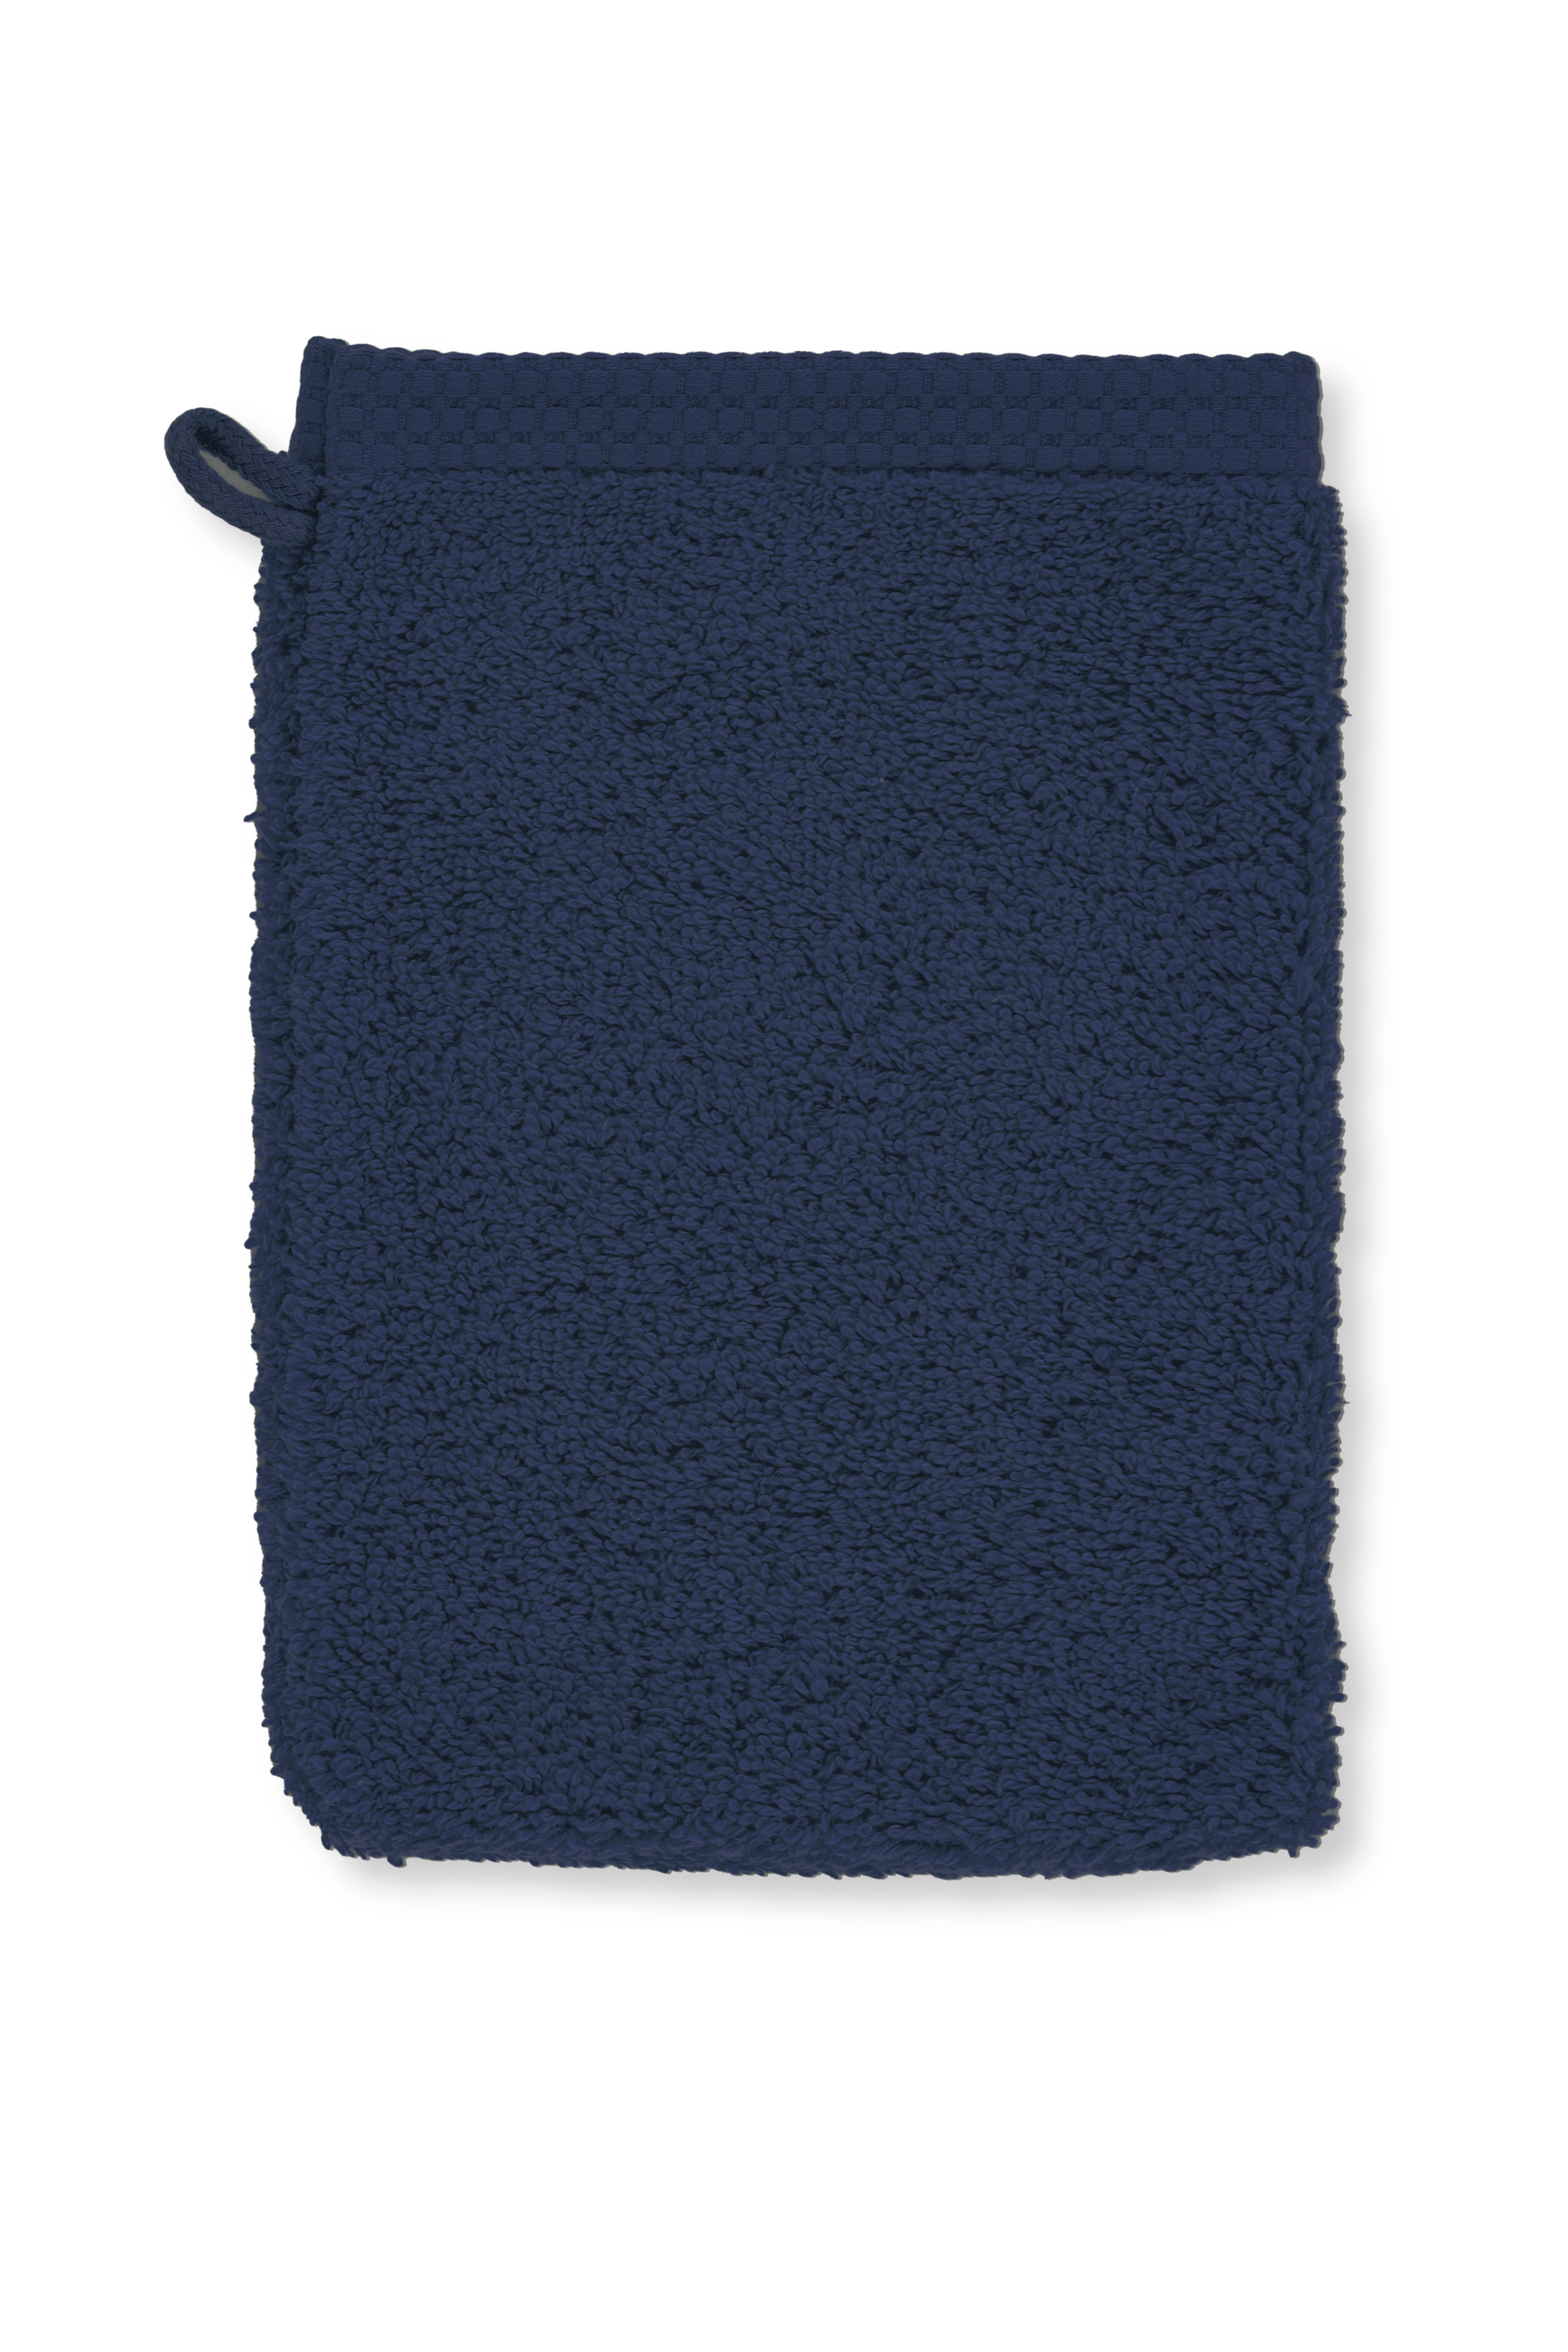 Washing glove DELUX 15x21cm - set/2, dark blue